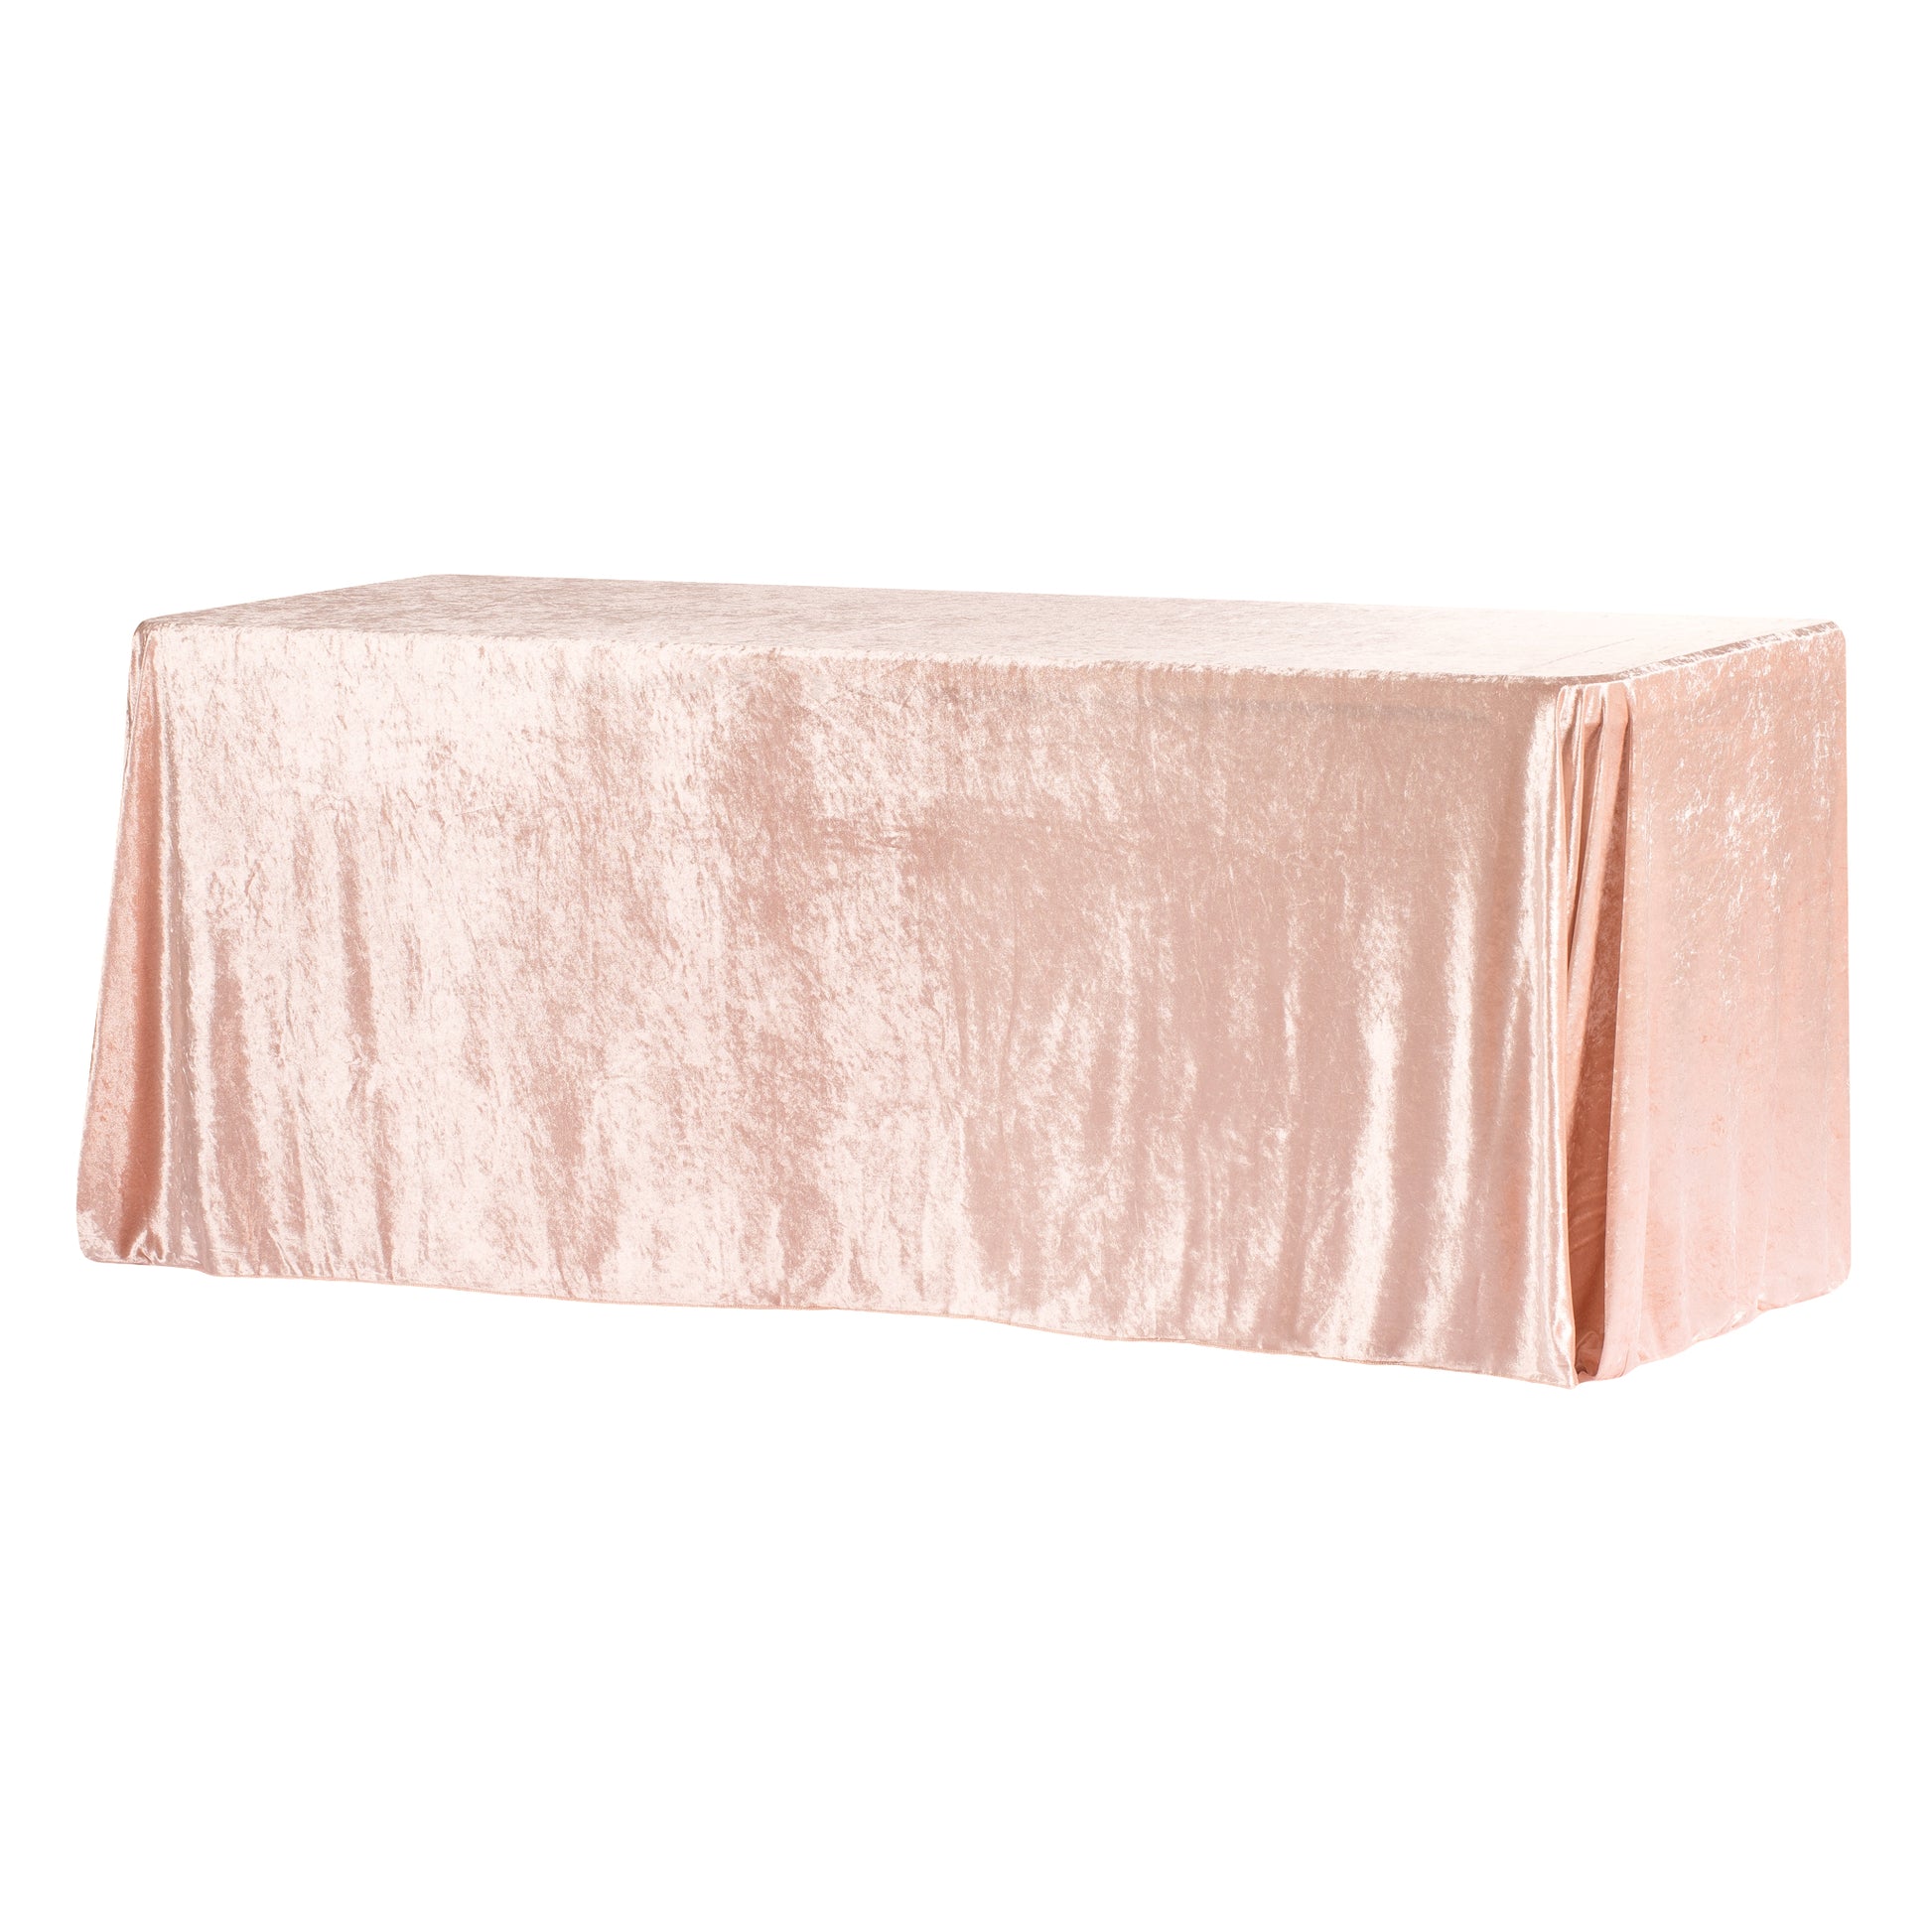 Velvet 90"x132" Rectangular Tablecloth - Blush/Rose Gold - CV Linens